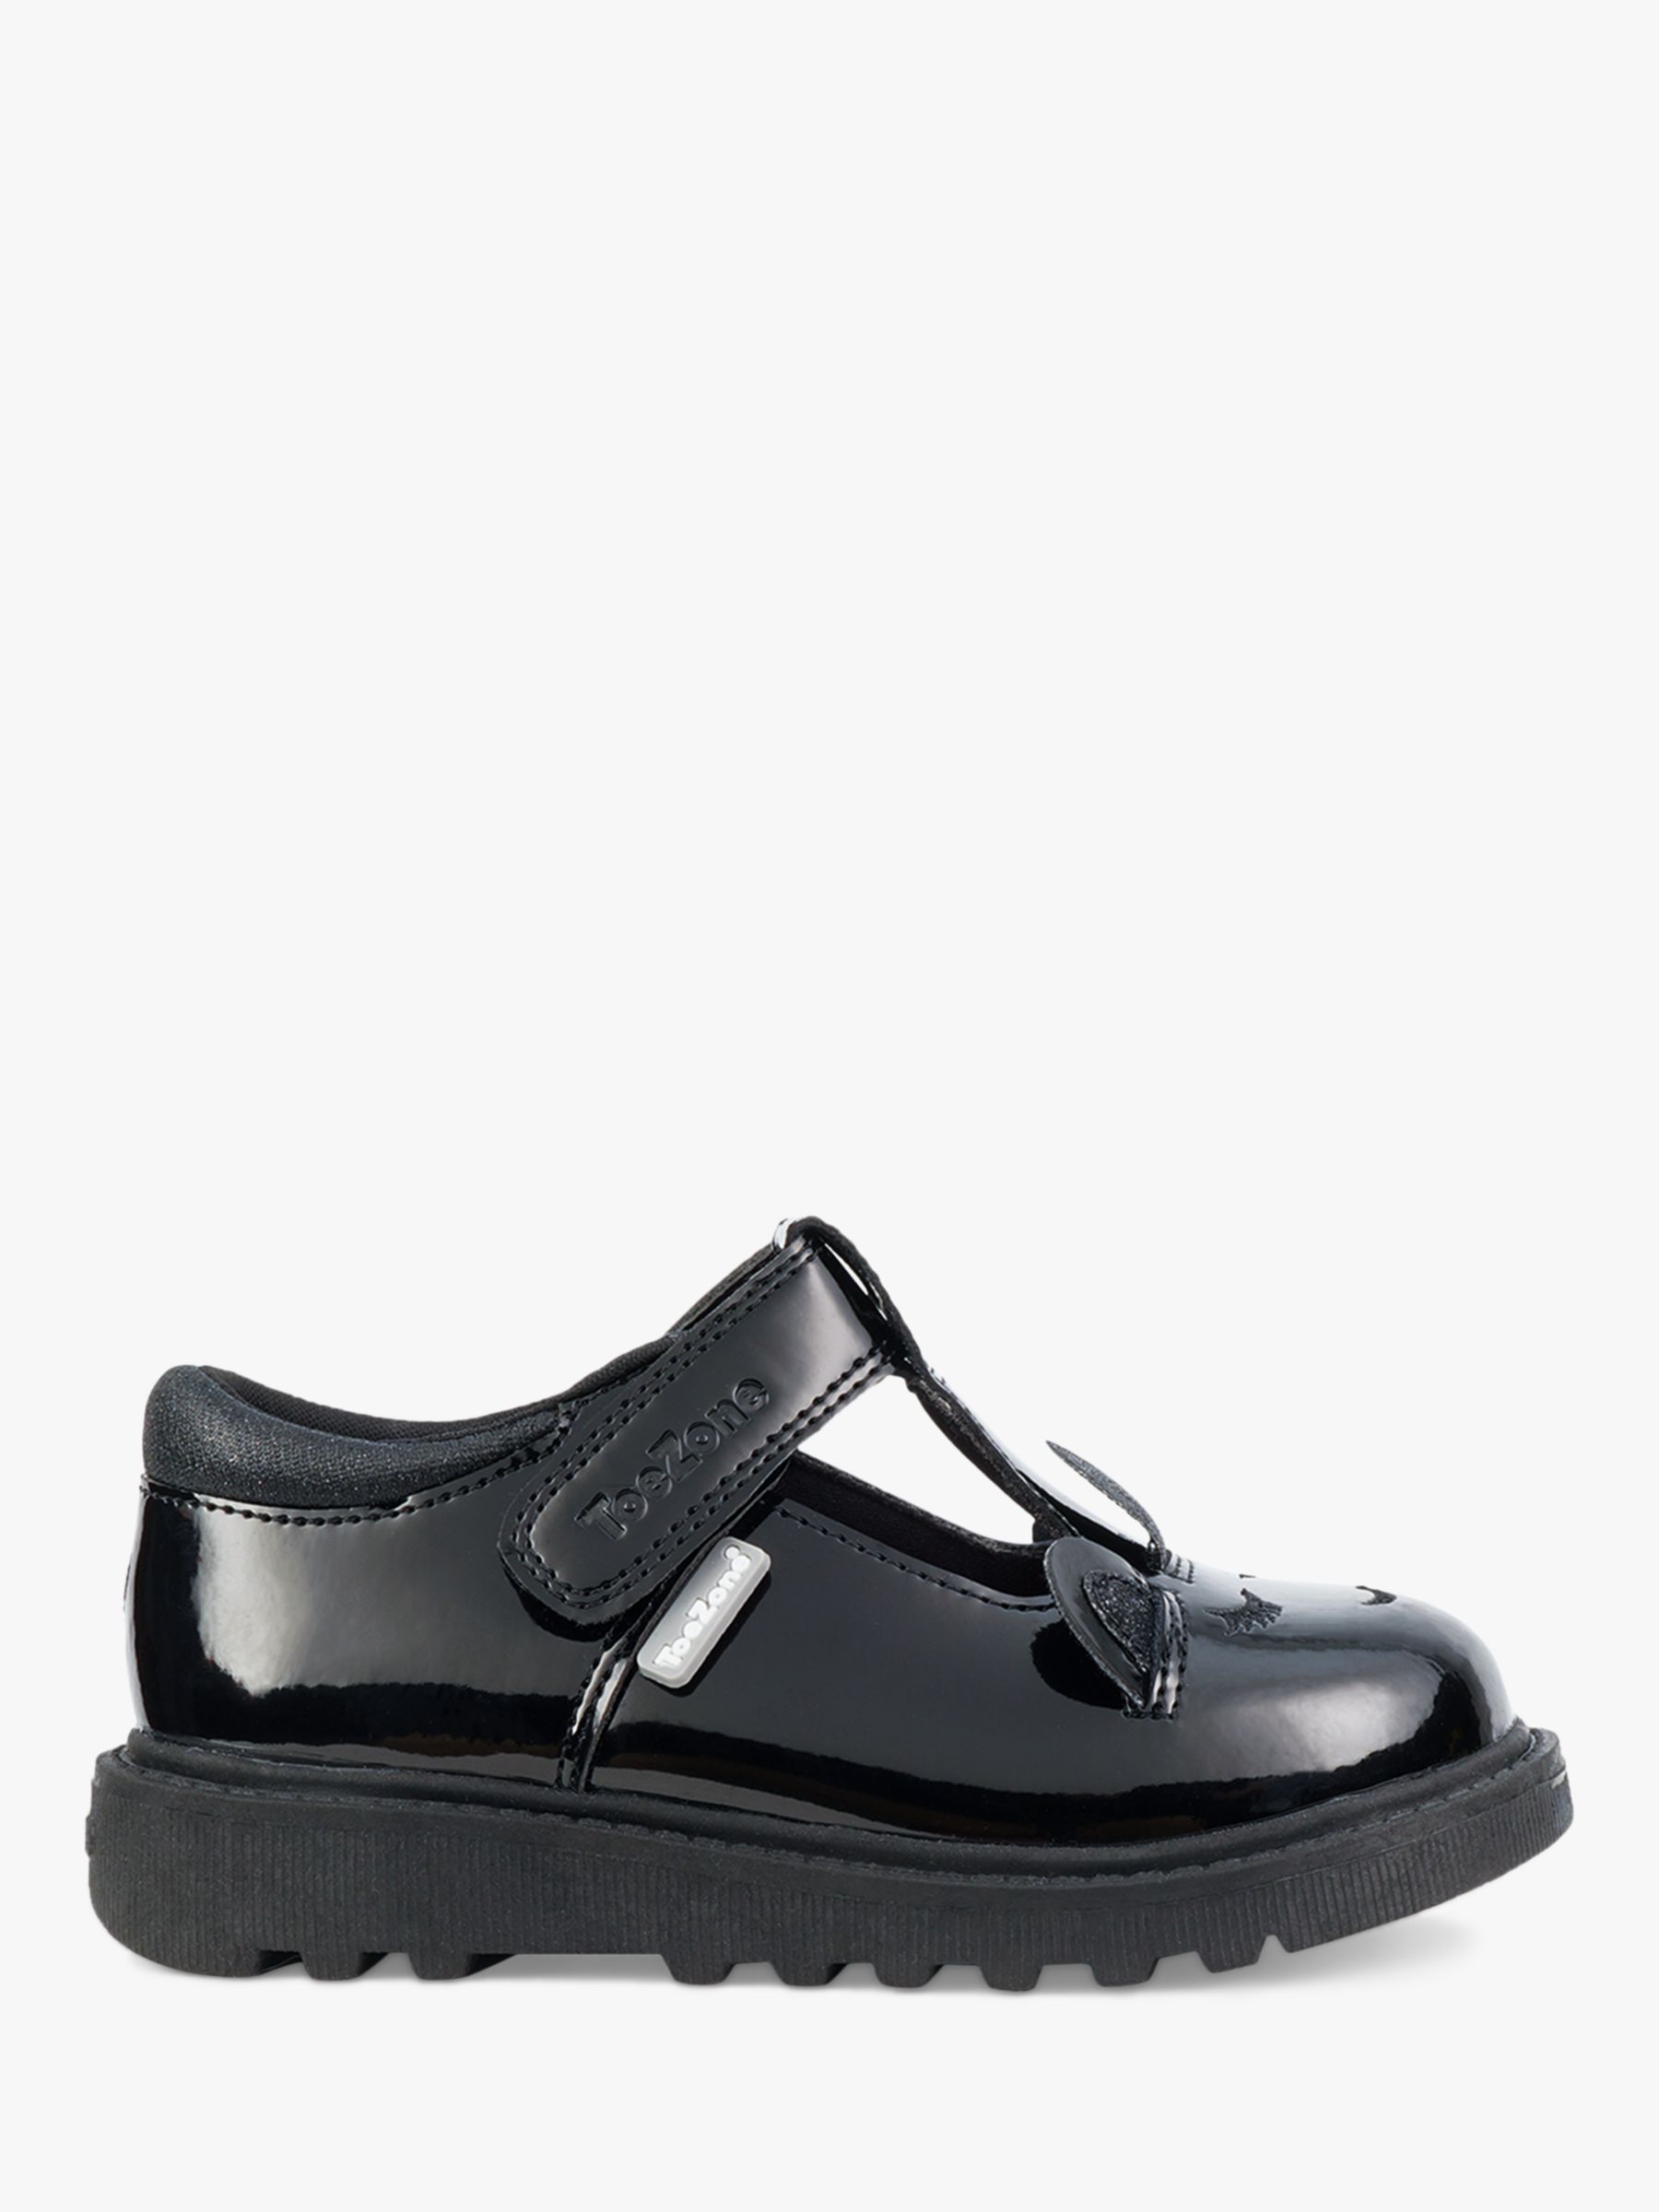 ToeZone Kid's Millie Patent Leather Unicorn School Shoes, Black, 8 Jnr